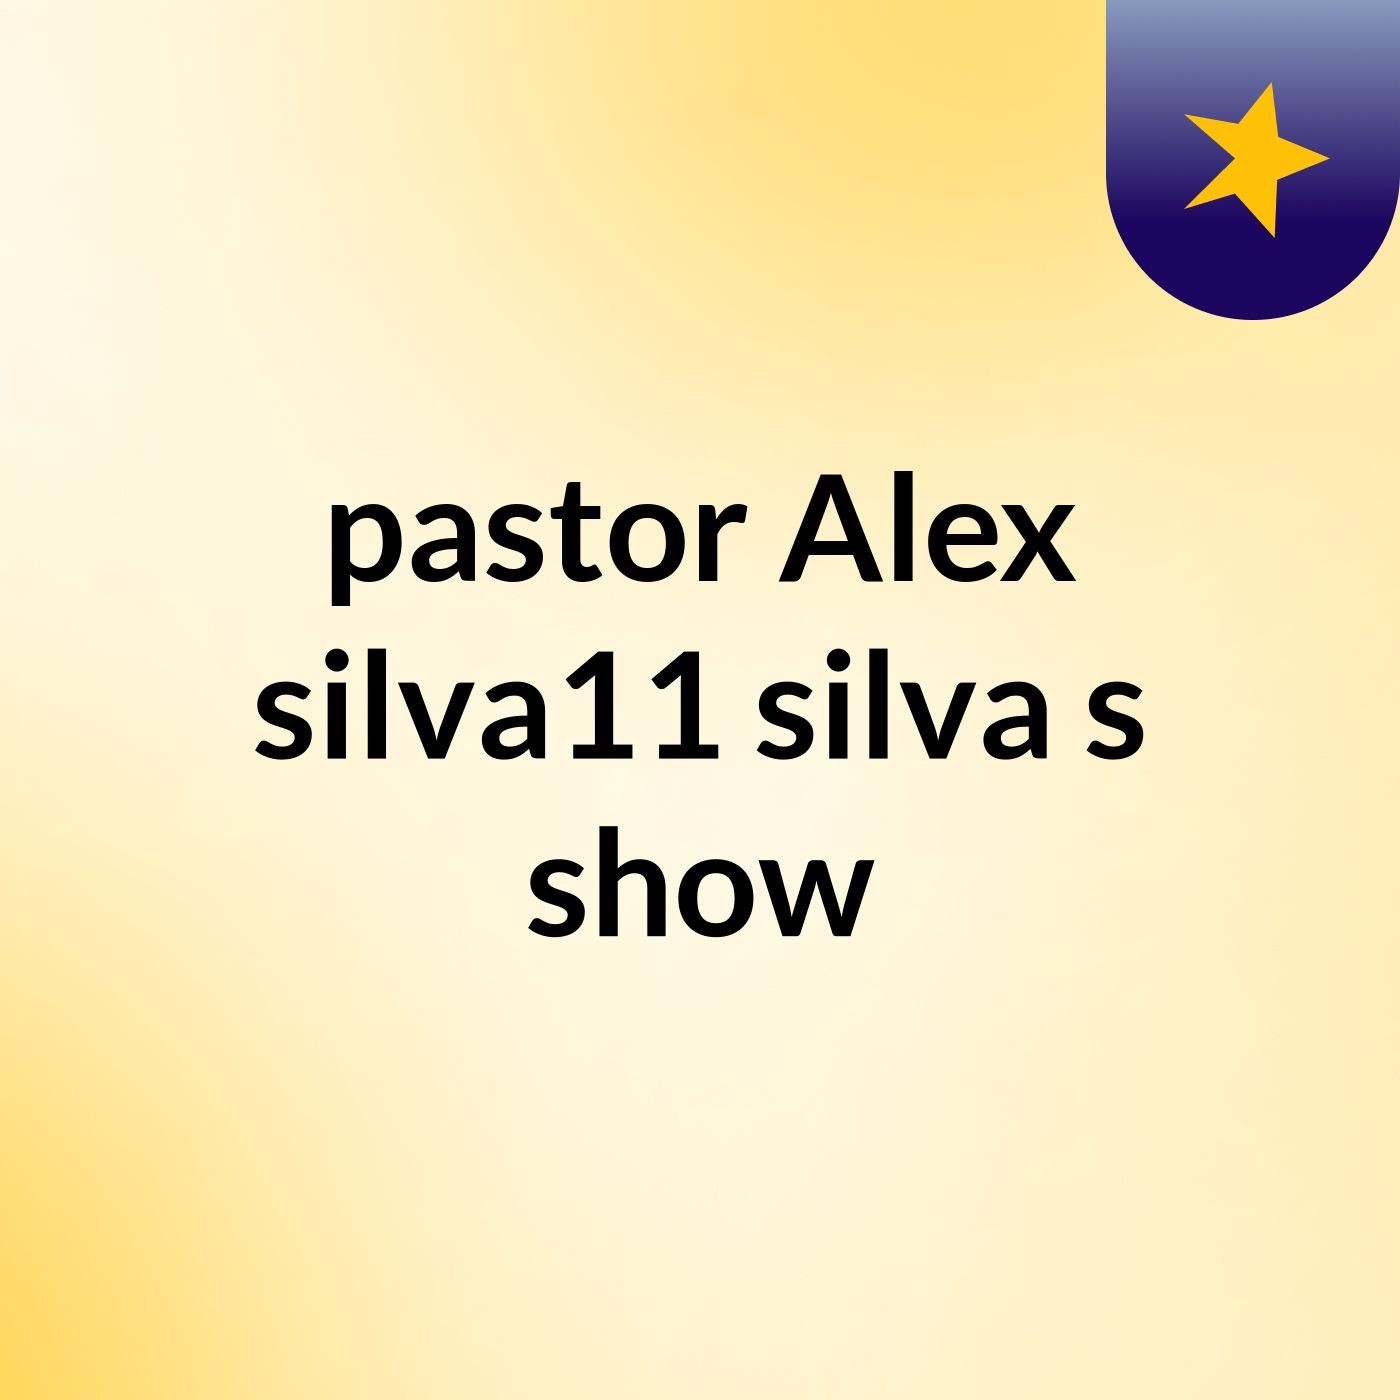 pastor Alex silva11 silva's show